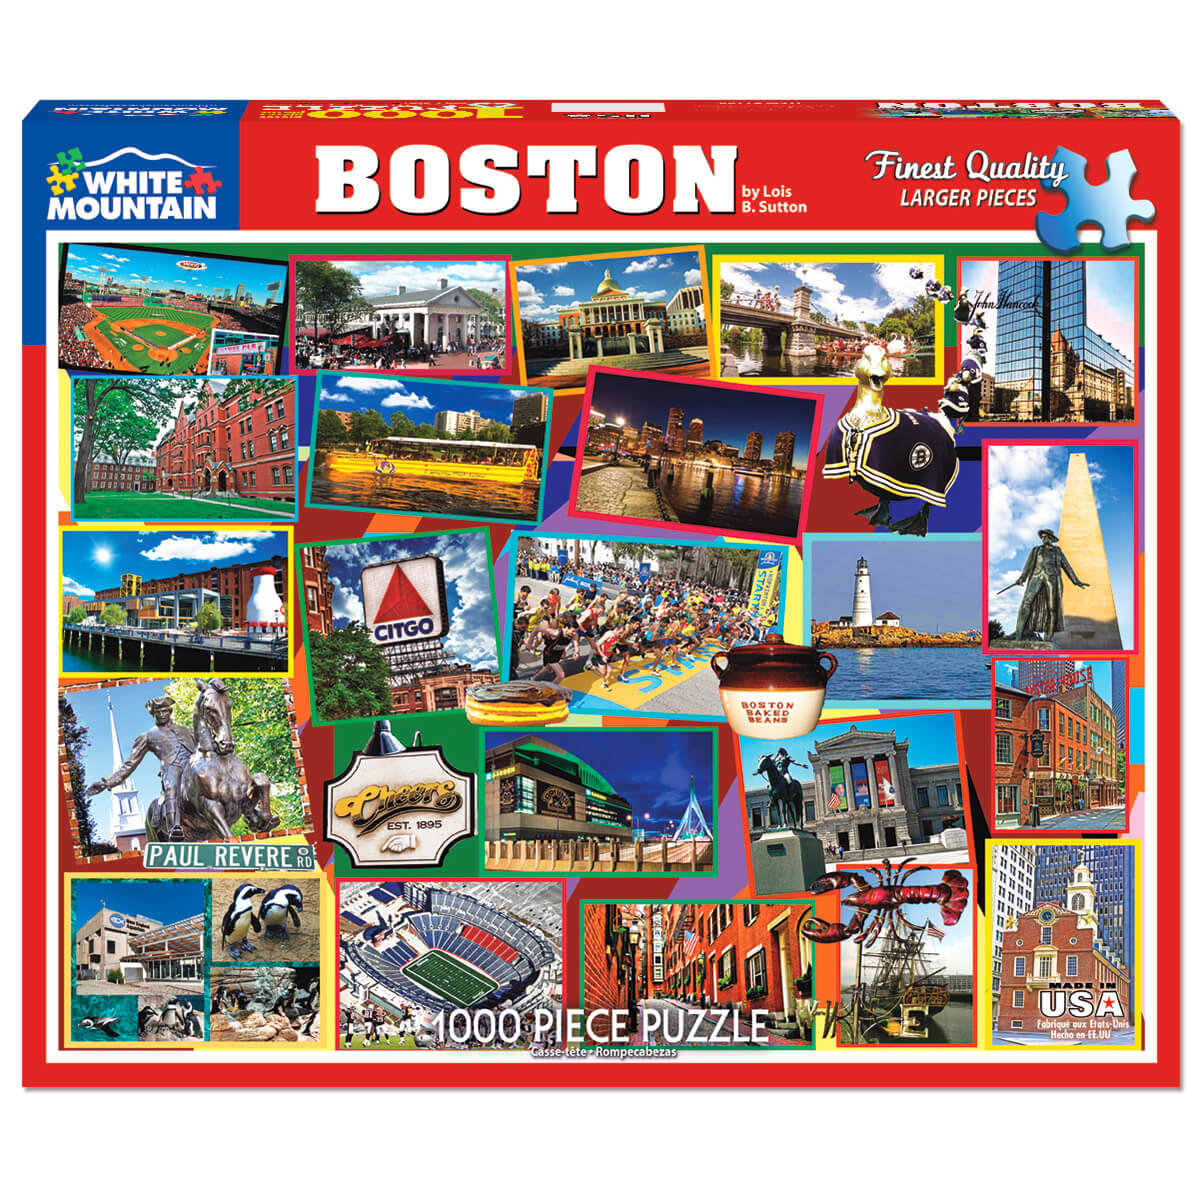 White Mountain Puzzles Boston 1000 Piece Jigsaw Puzzle